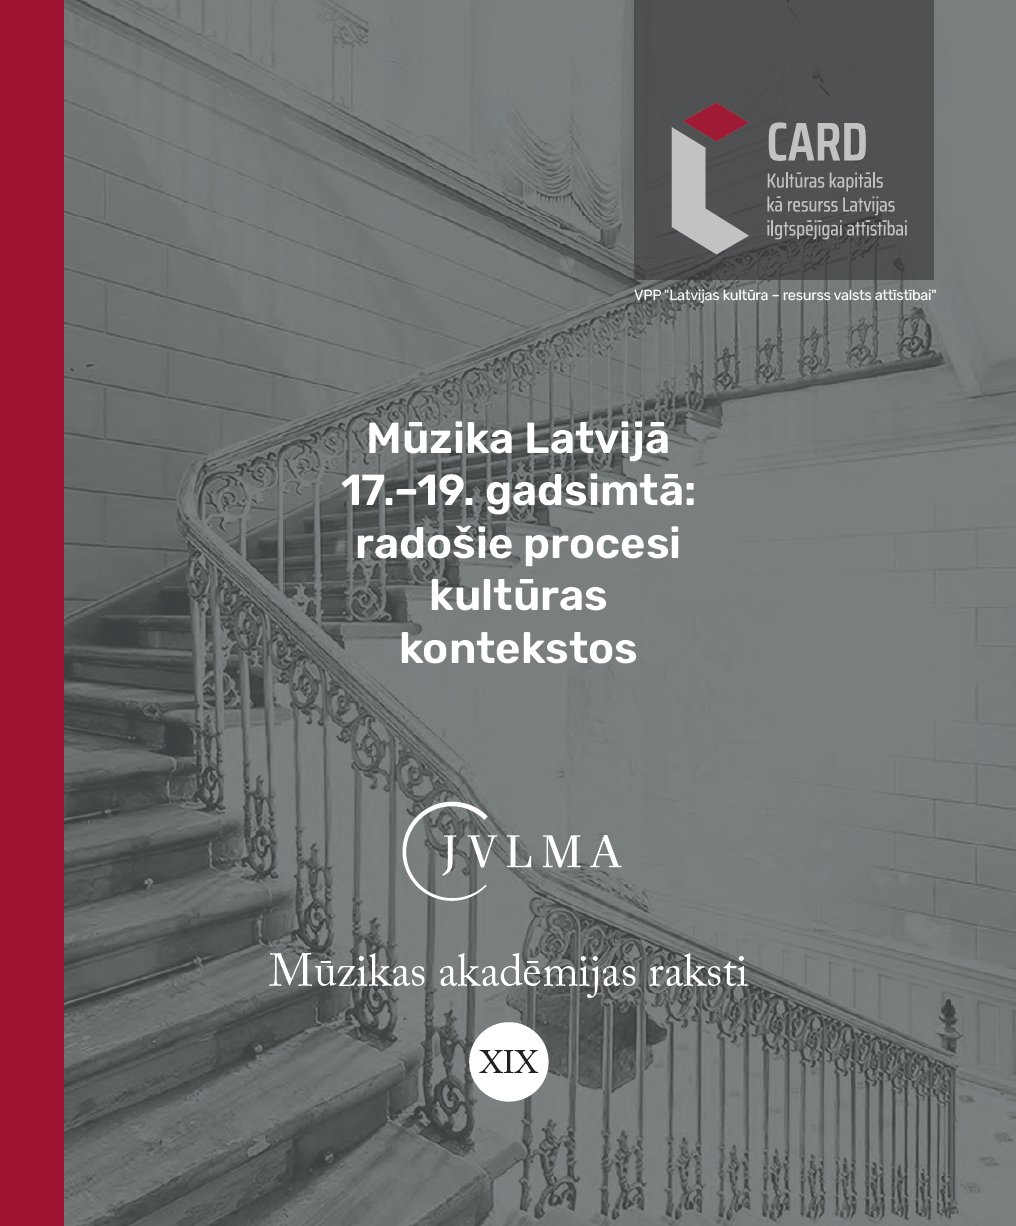 					View Vol. 19 (2021): Mūzika Latvijā 17.–19. gadsimtā: radošie procesi kultūras kontekstos, Mūzikas akadēmijas raksti
				